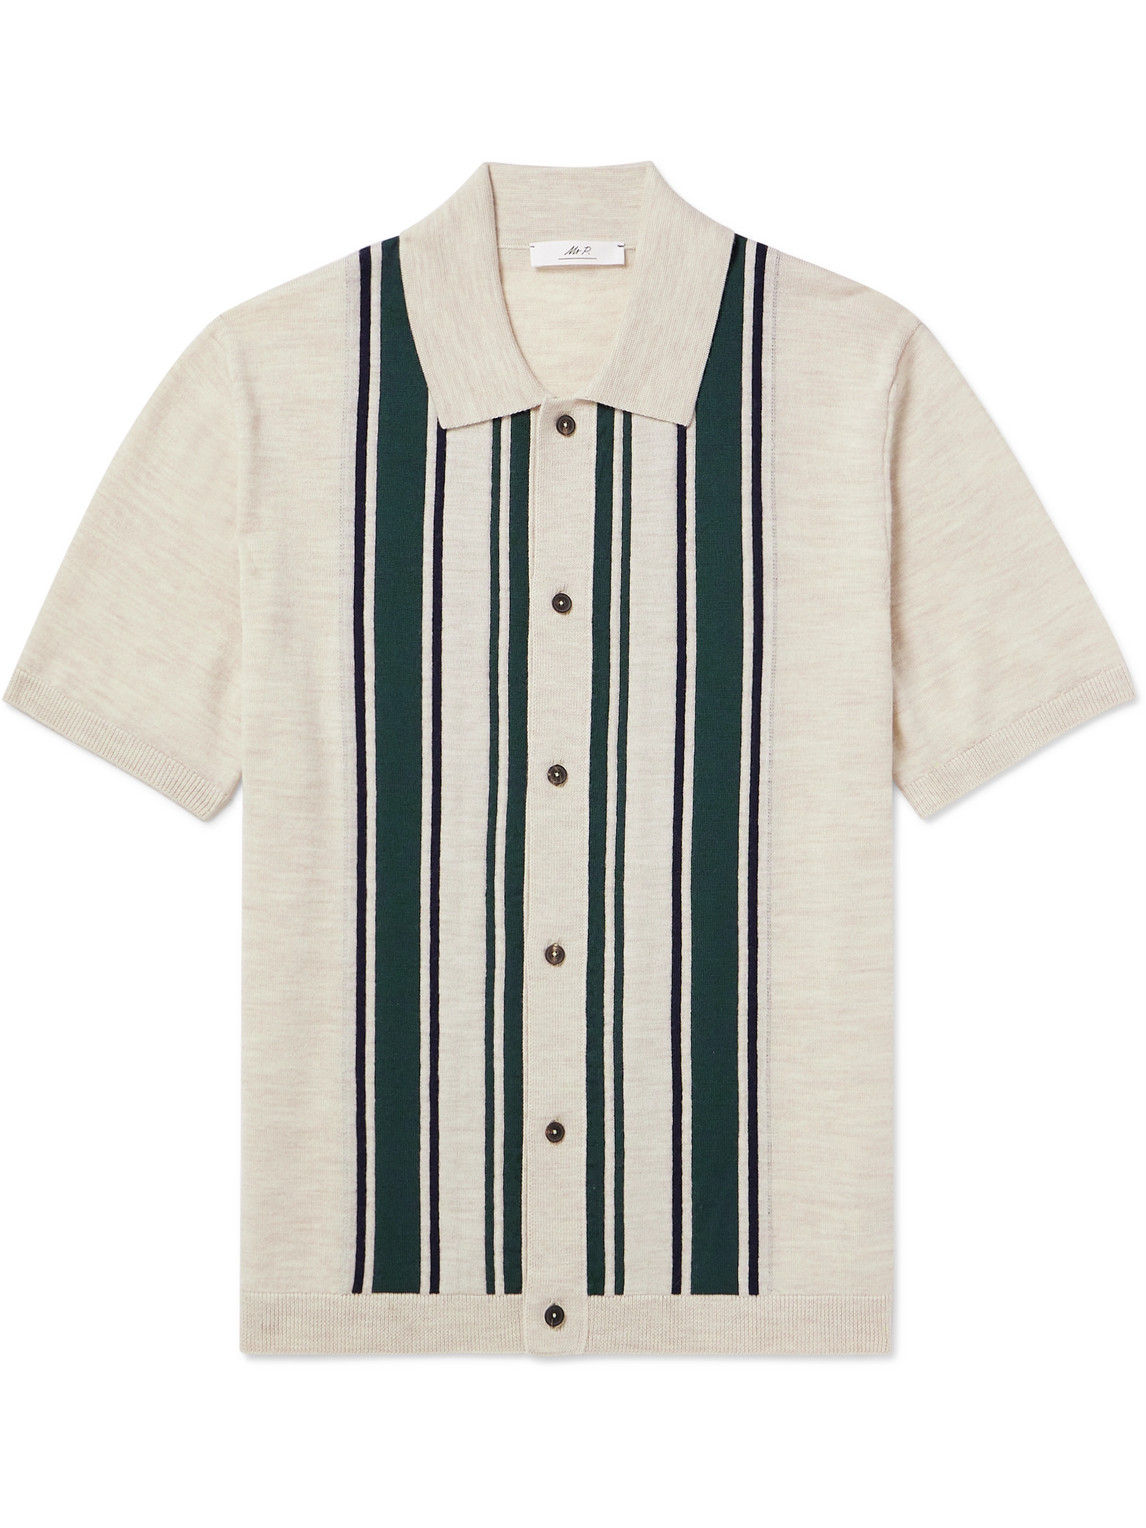 Mr P. - Golf Striped Merino Wool Polo Shirt - Men - Neutrals - S von Mr P.